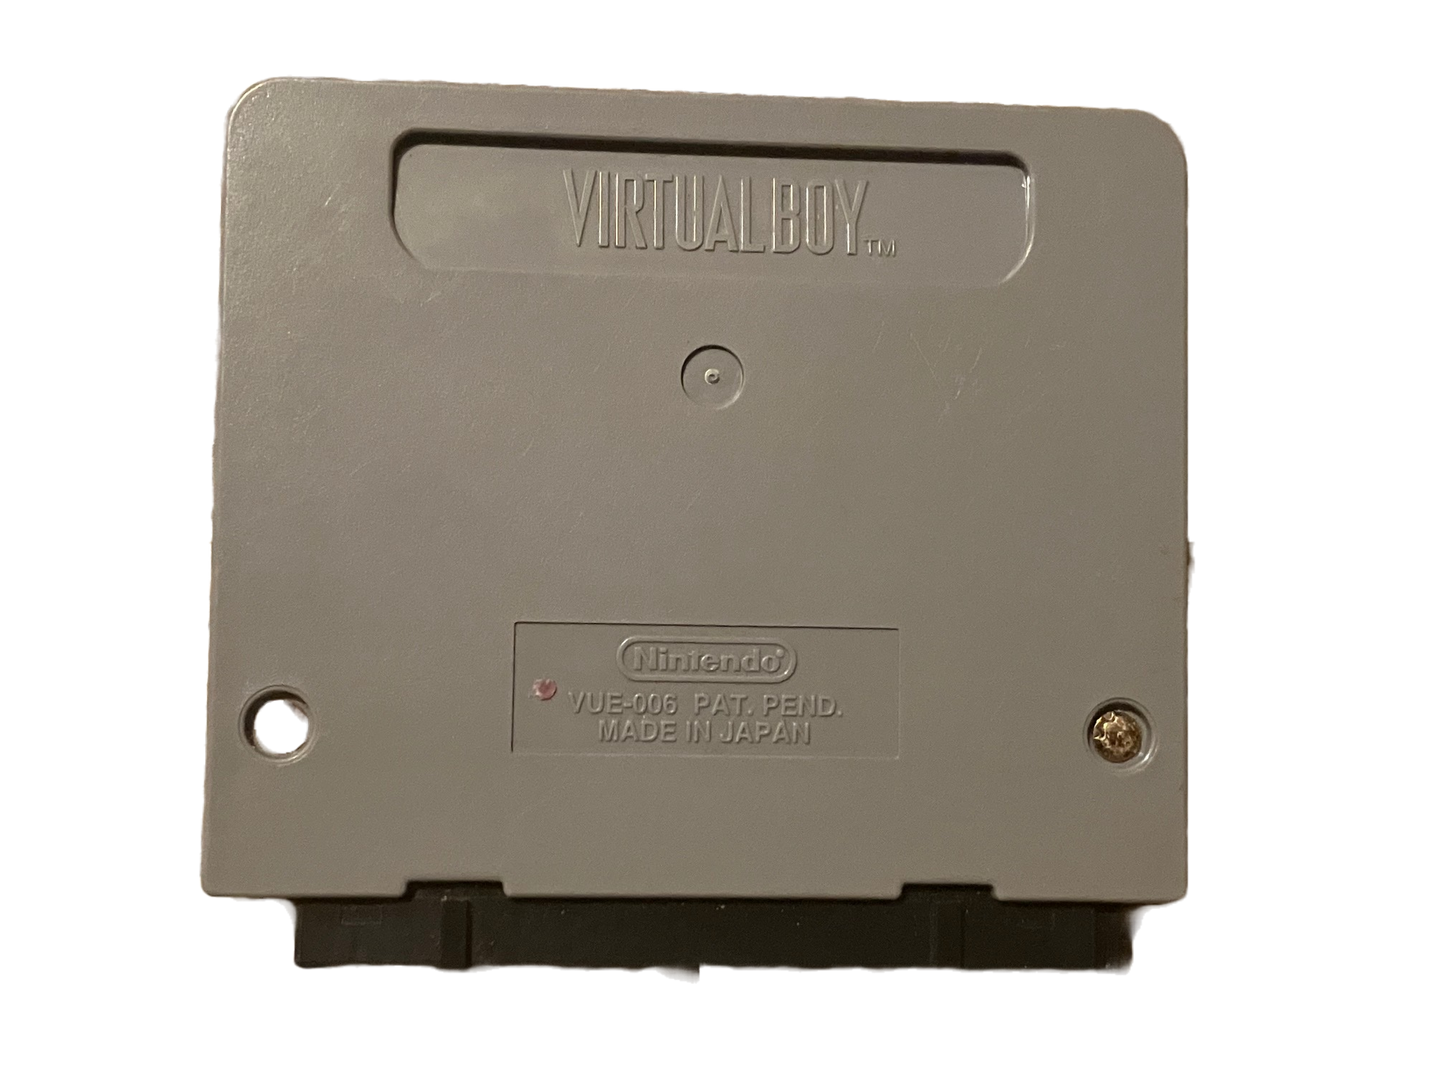 Teleroboxer Nintendo Virtual Boy Video Game